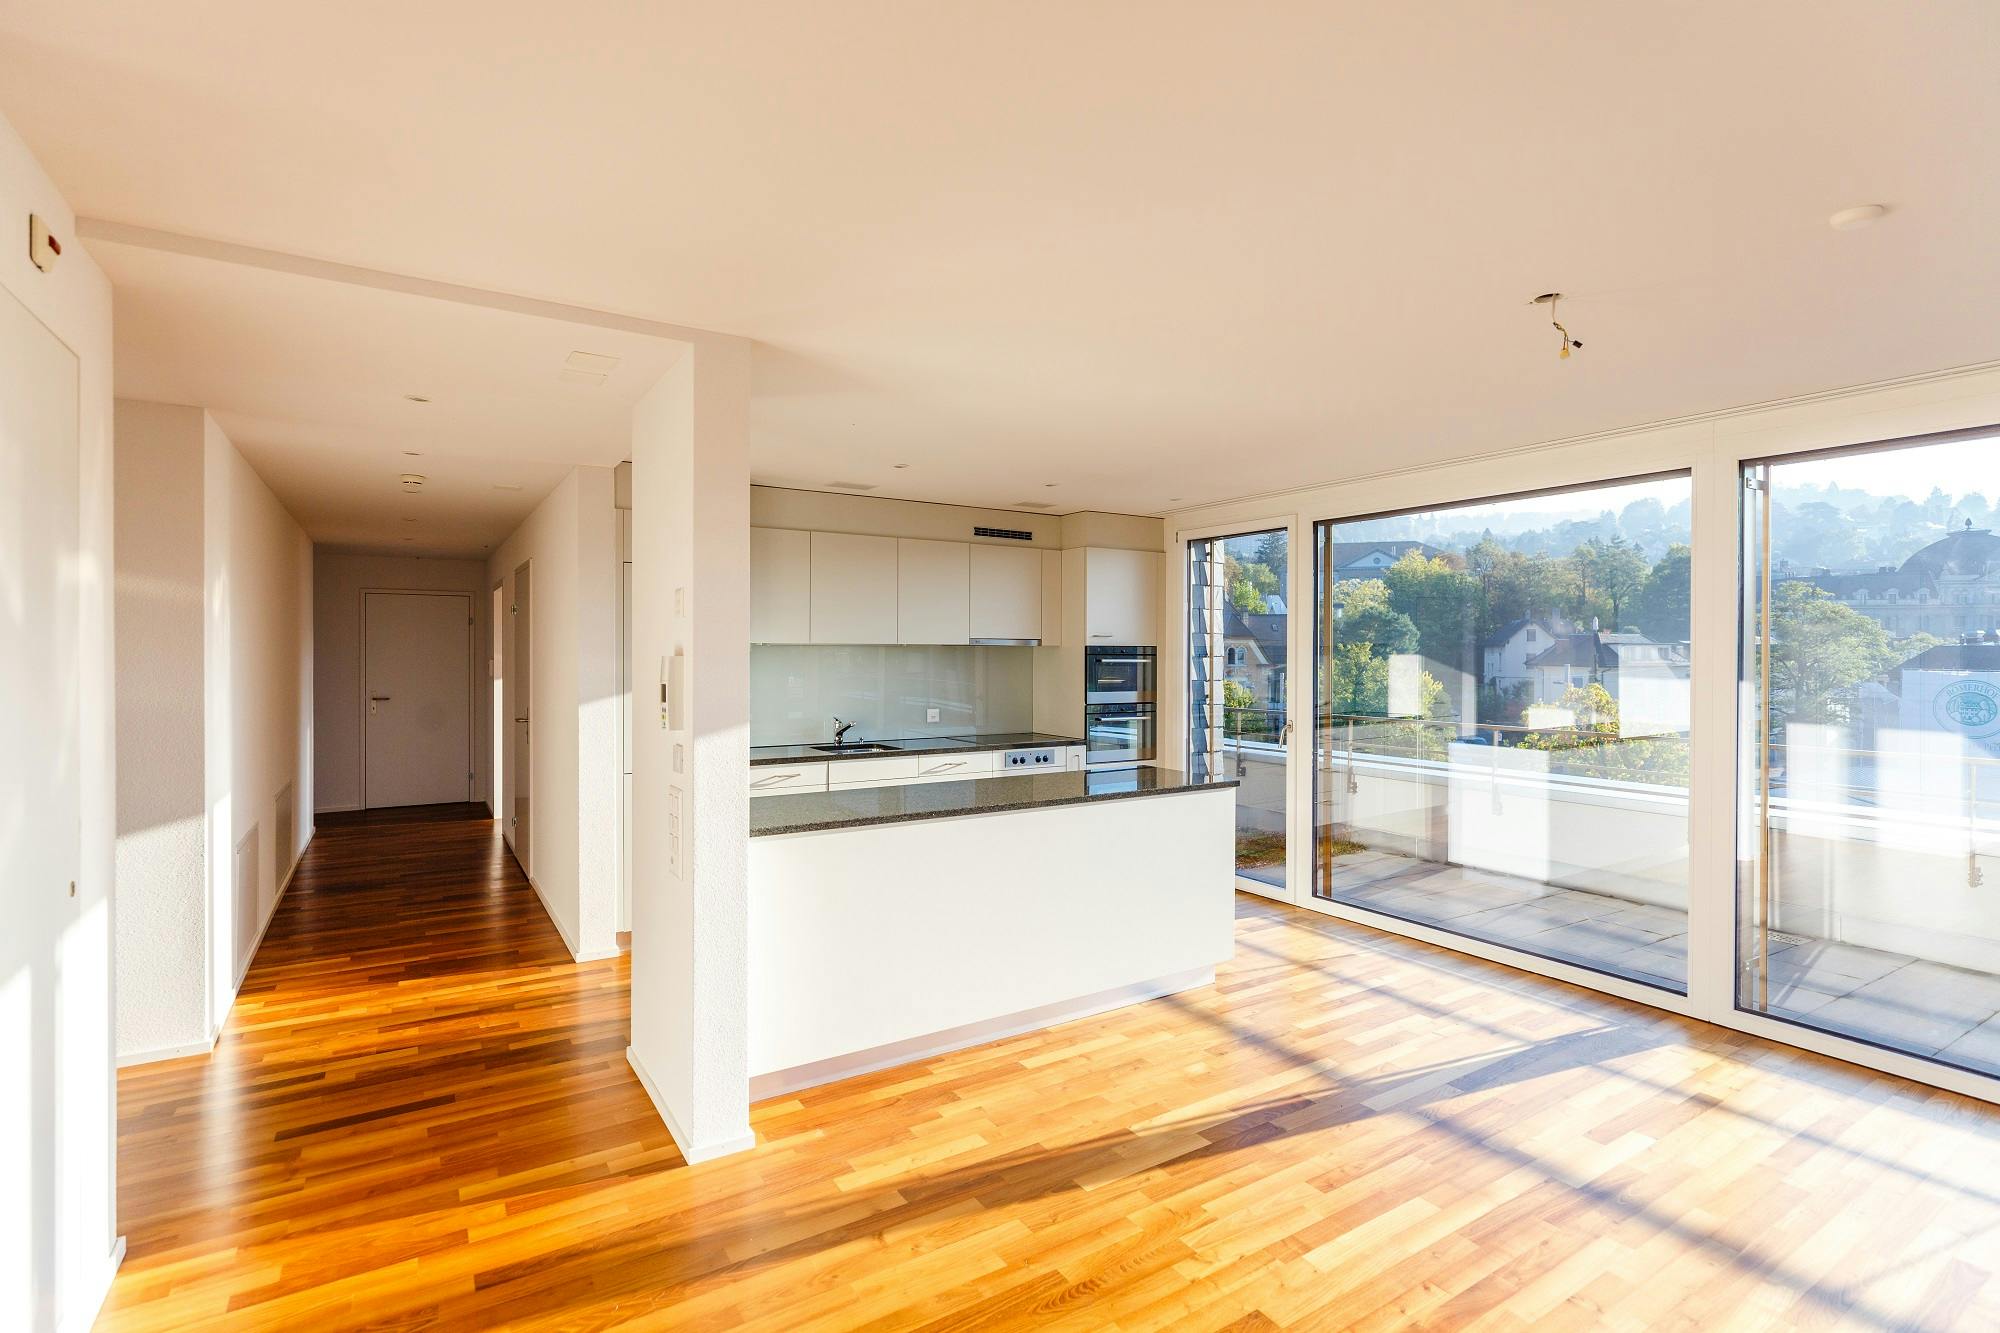 Helle, moderne Küche mit Kücheninsel in einem offenen Wohnraum, Parkettboden, großen Fenstern und Balkonzugang.